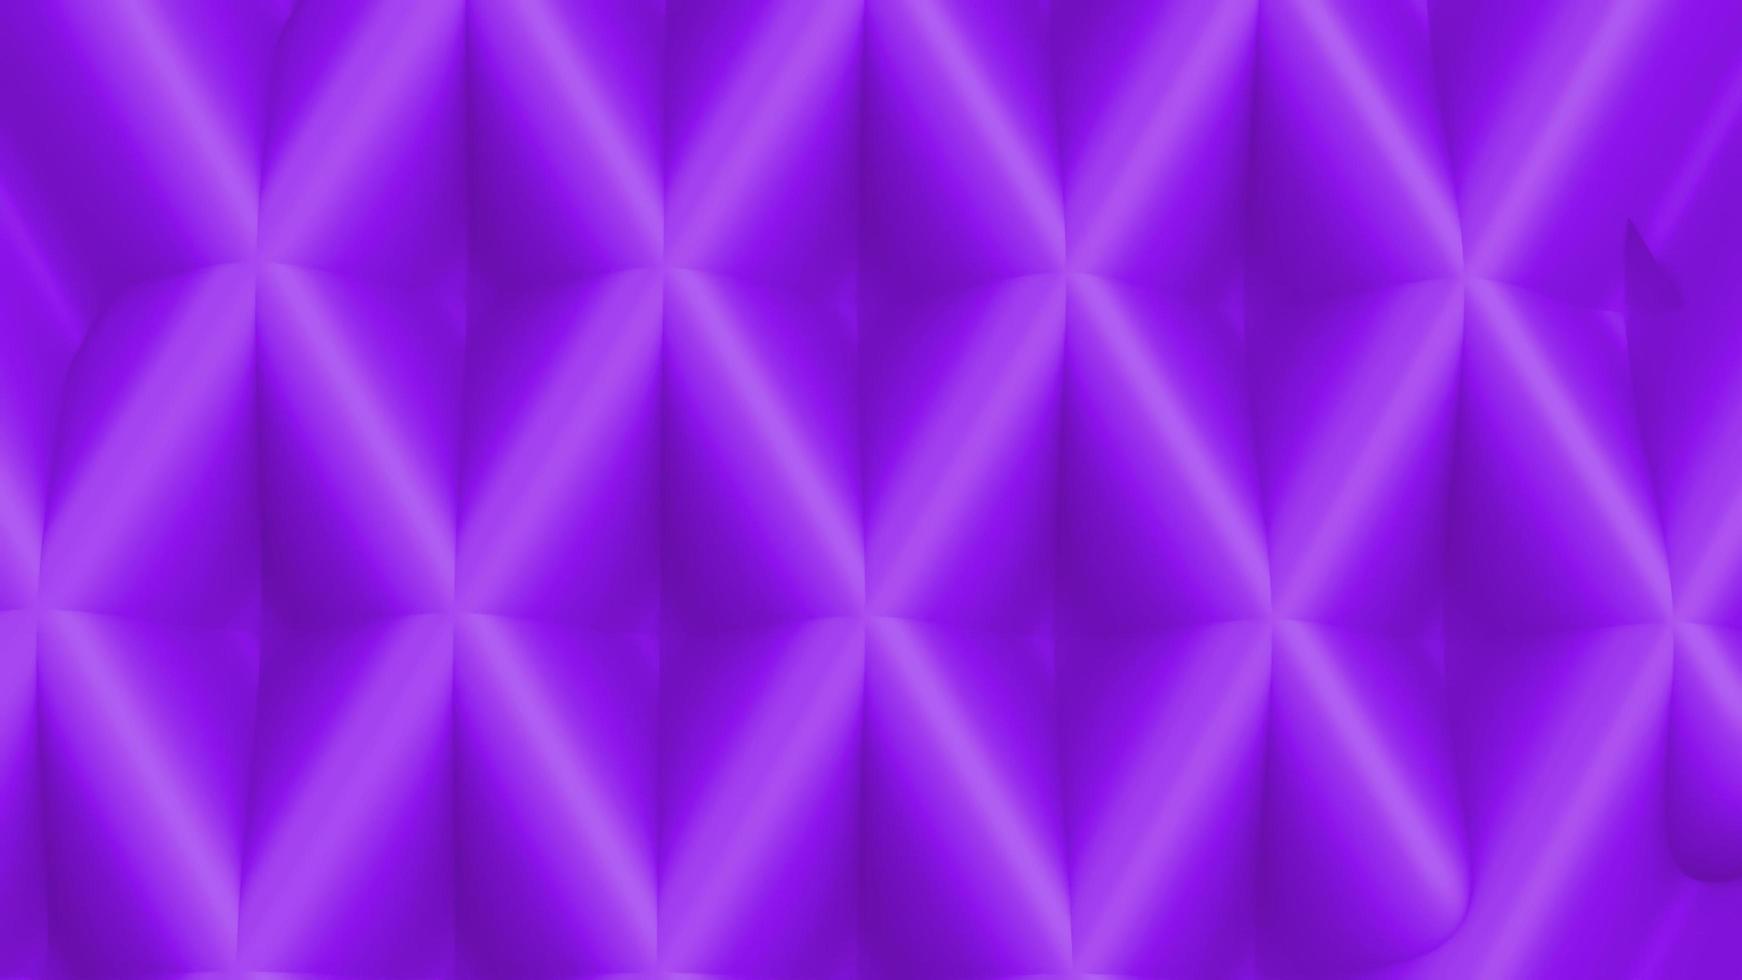 Concept art 4k purple background texture illustration 3d render photo